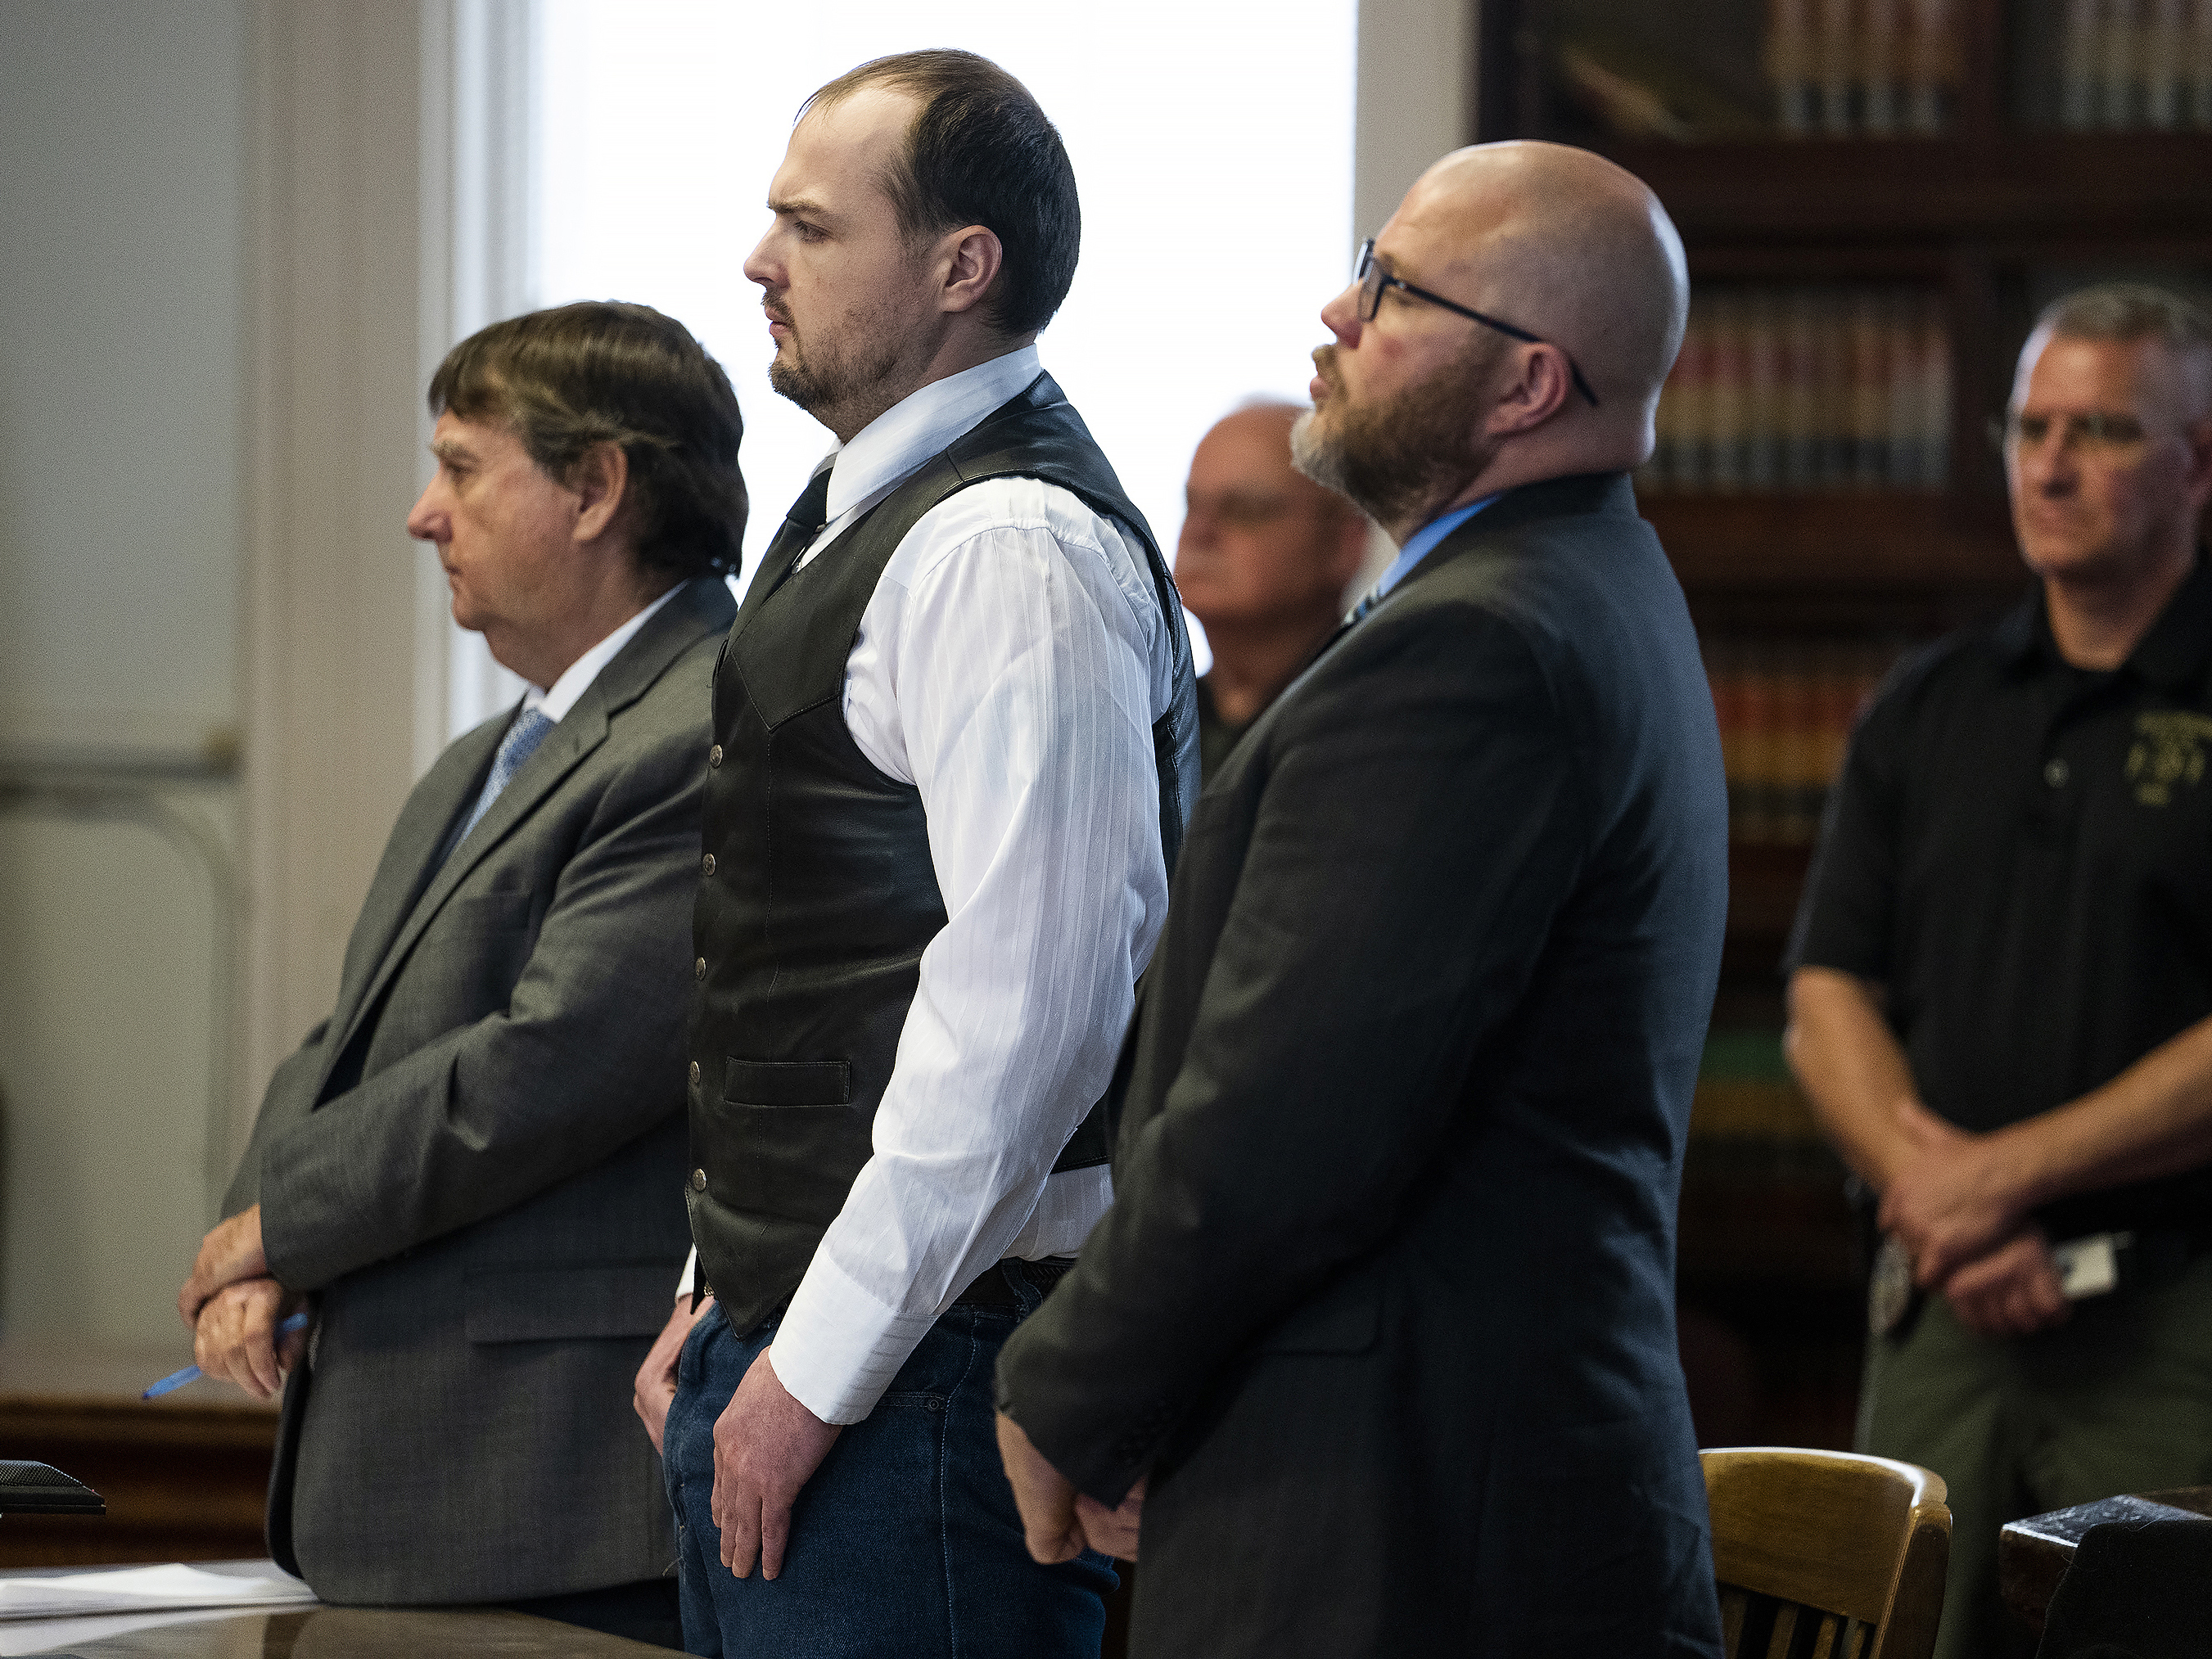 George Wagner IV junto a los abogados John P. Parker y Richard M. Nash mientras recibe su sentencia del juez Randy Deering en una audiencia en Waverly, Ohio. 